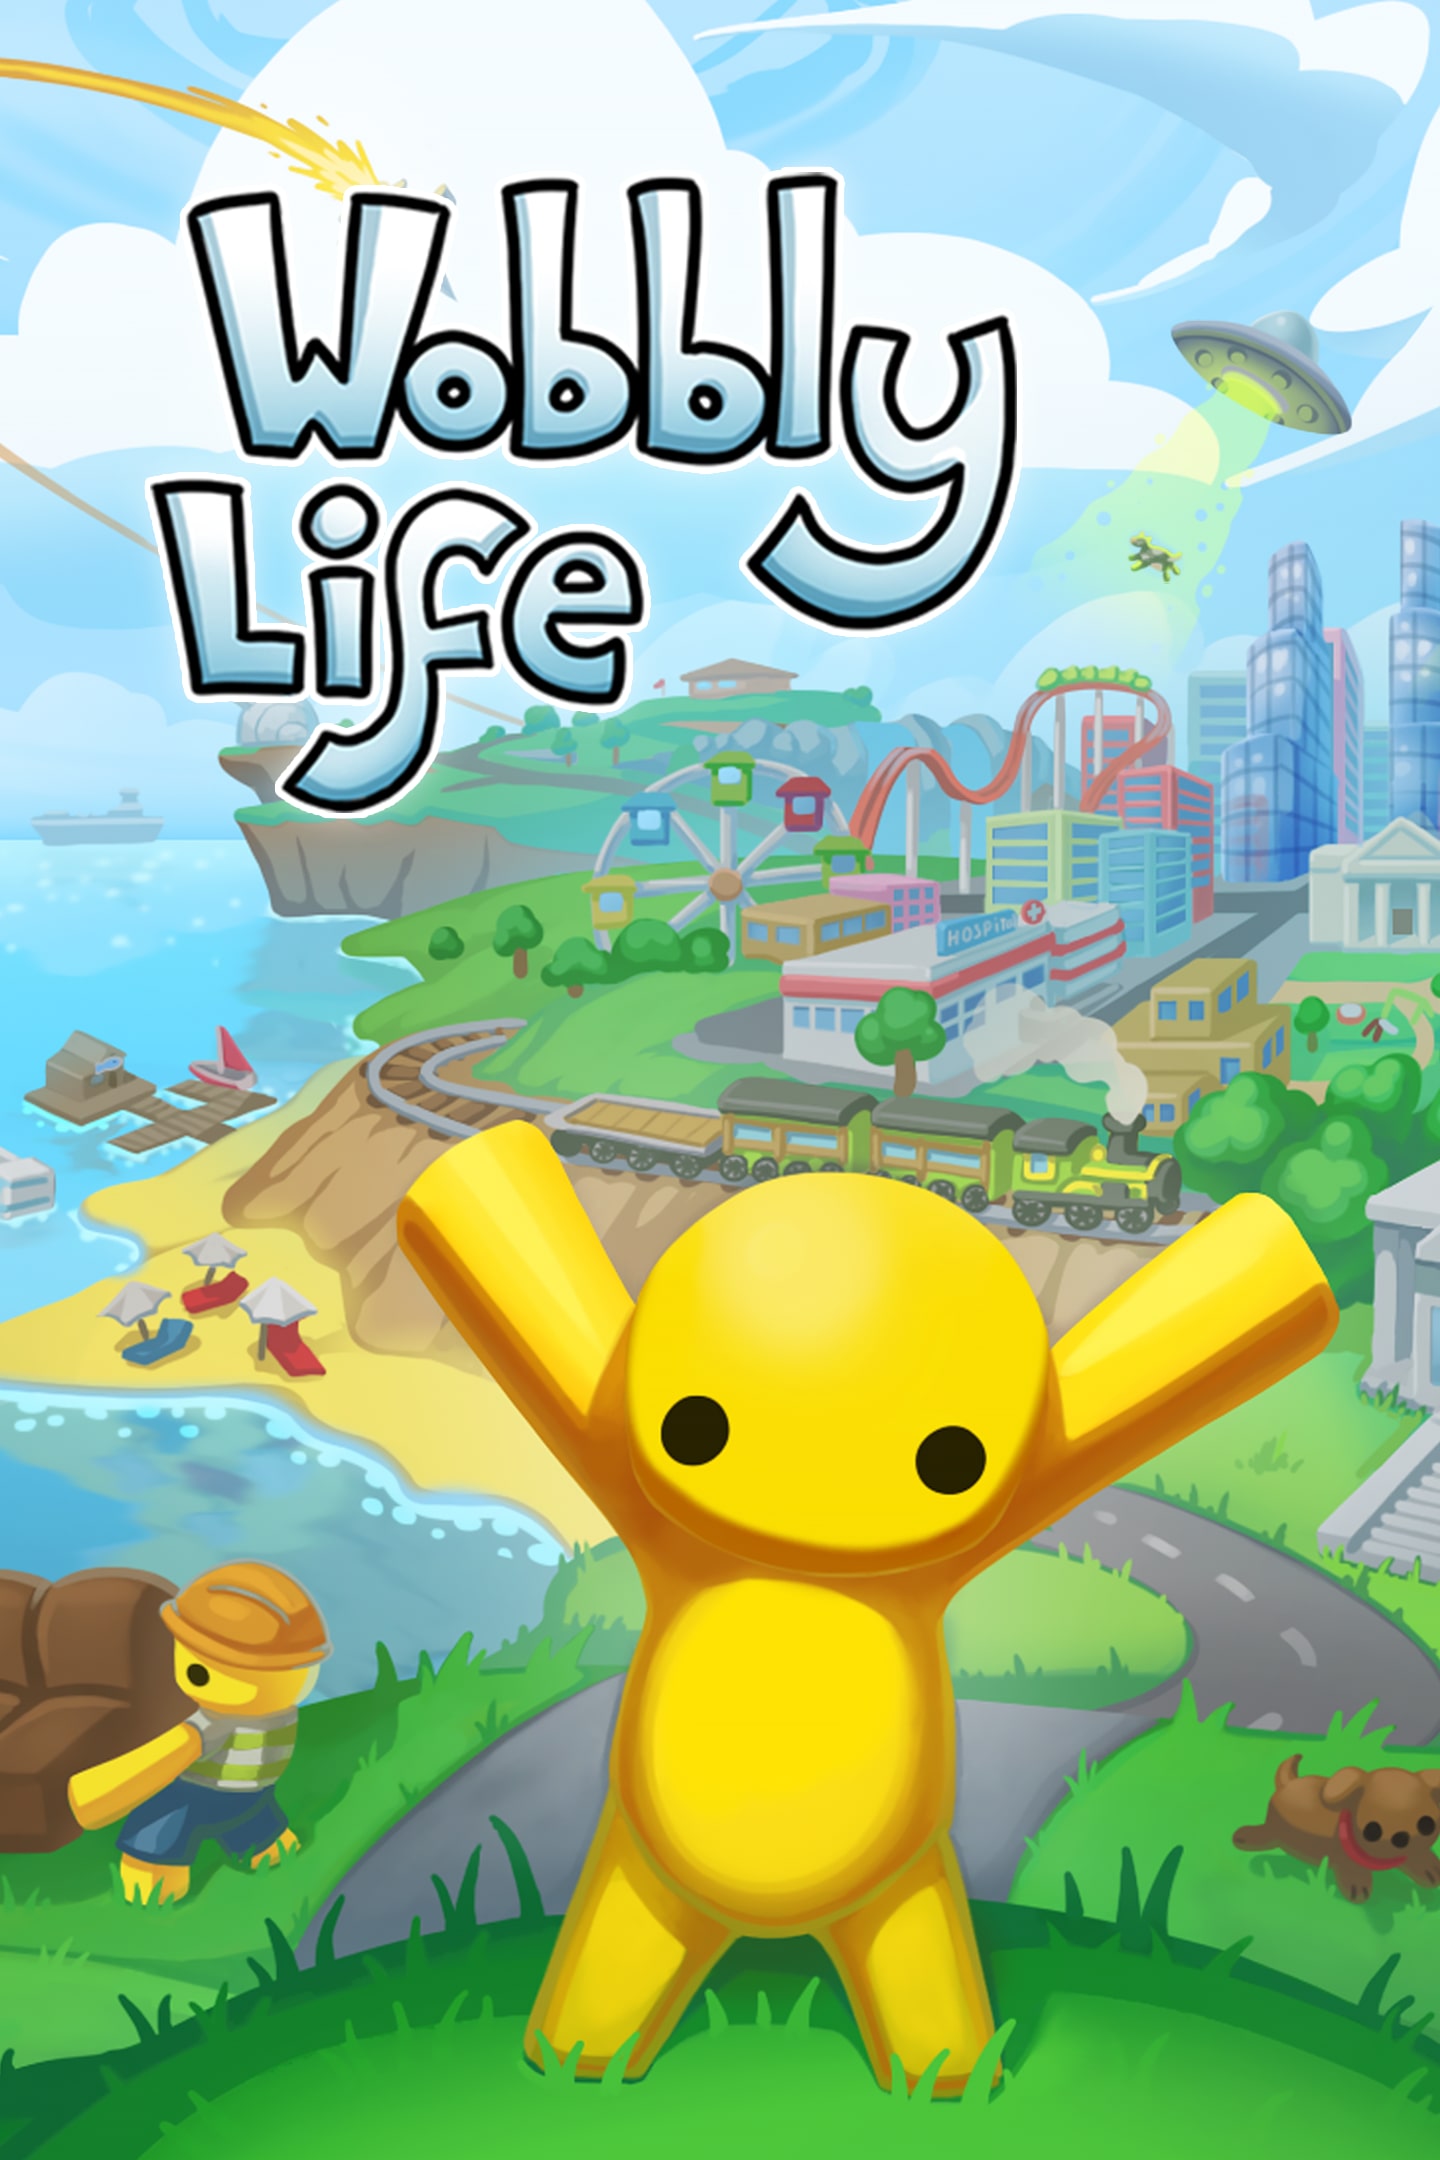 wobbly life